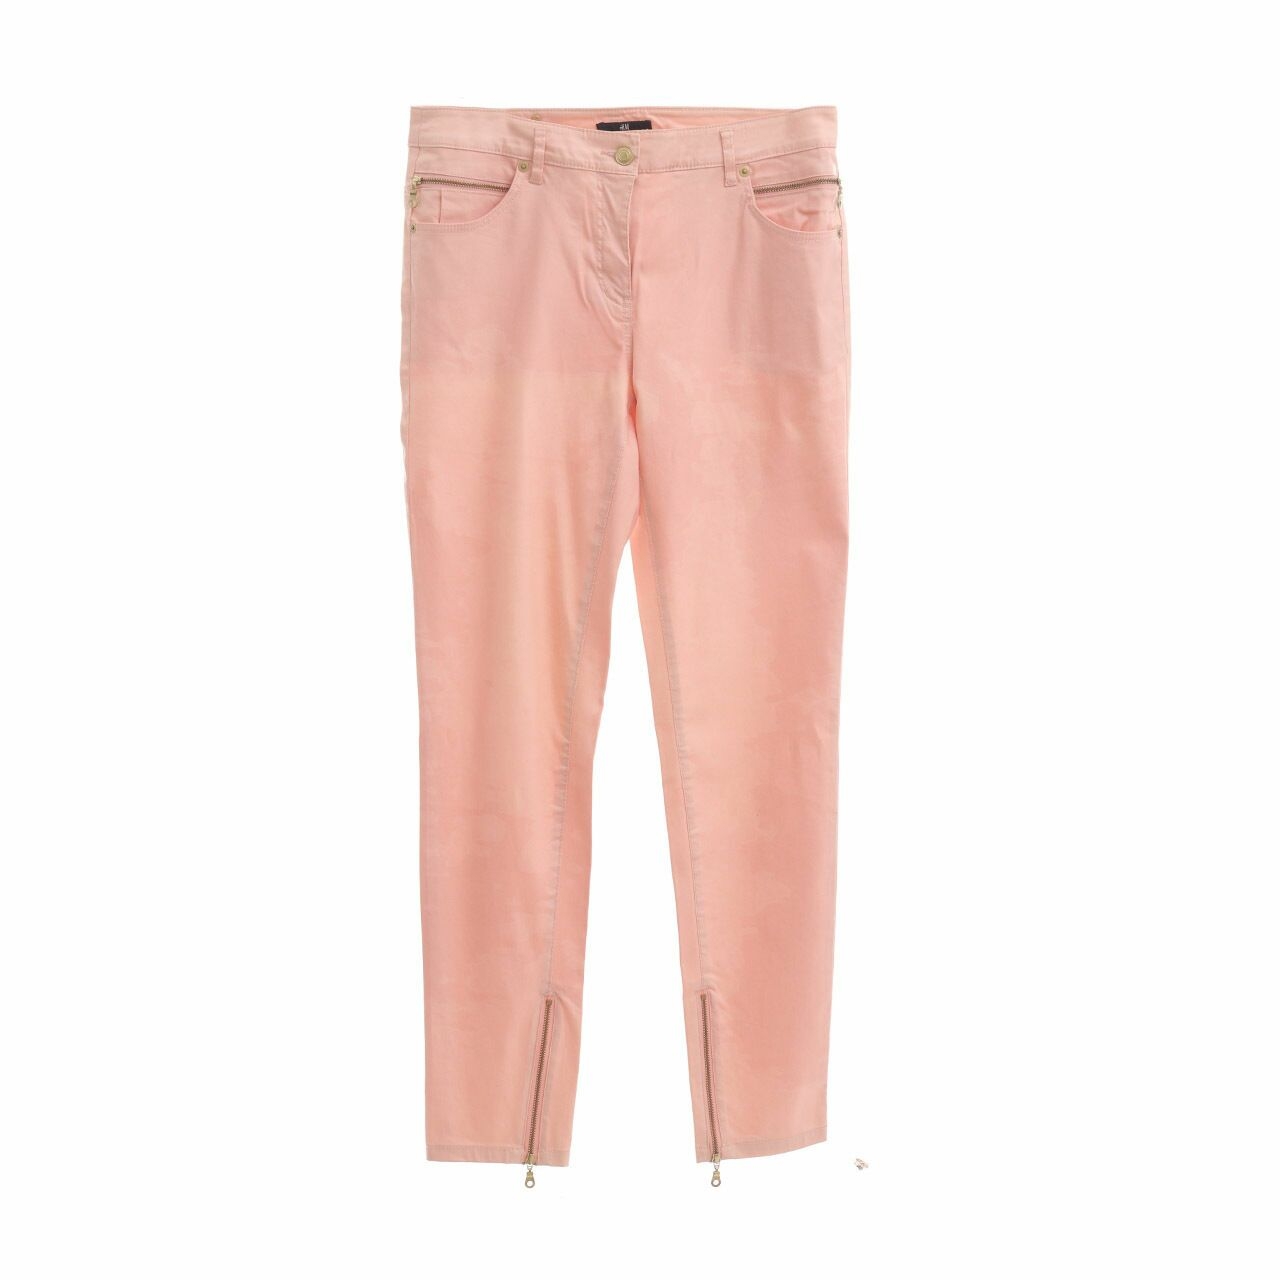 H&M Peach Tie Dye Long Pants